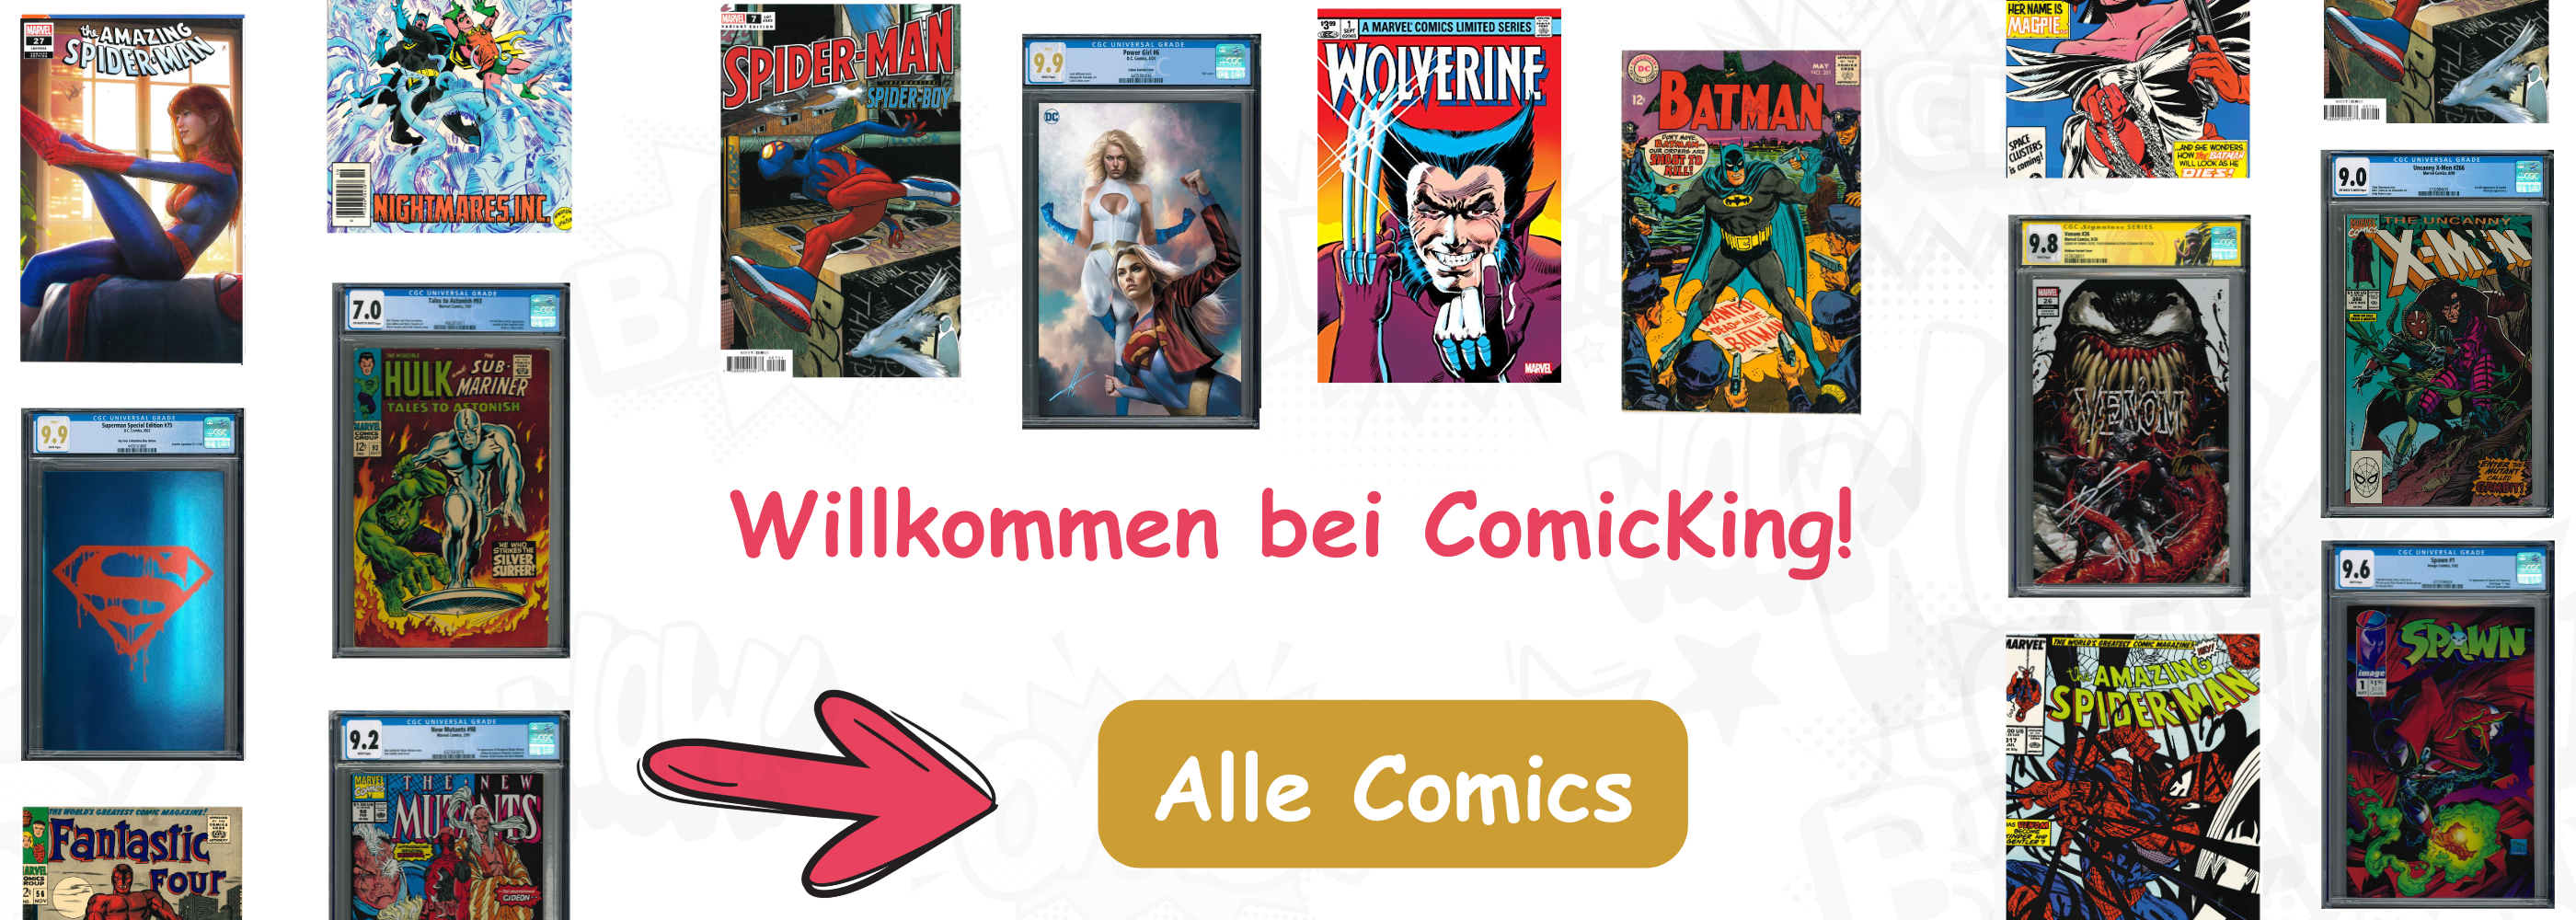 WIllkommen bei ComicKing | Comics von Spider-Man, Batman, Star Wars und co. Desktop